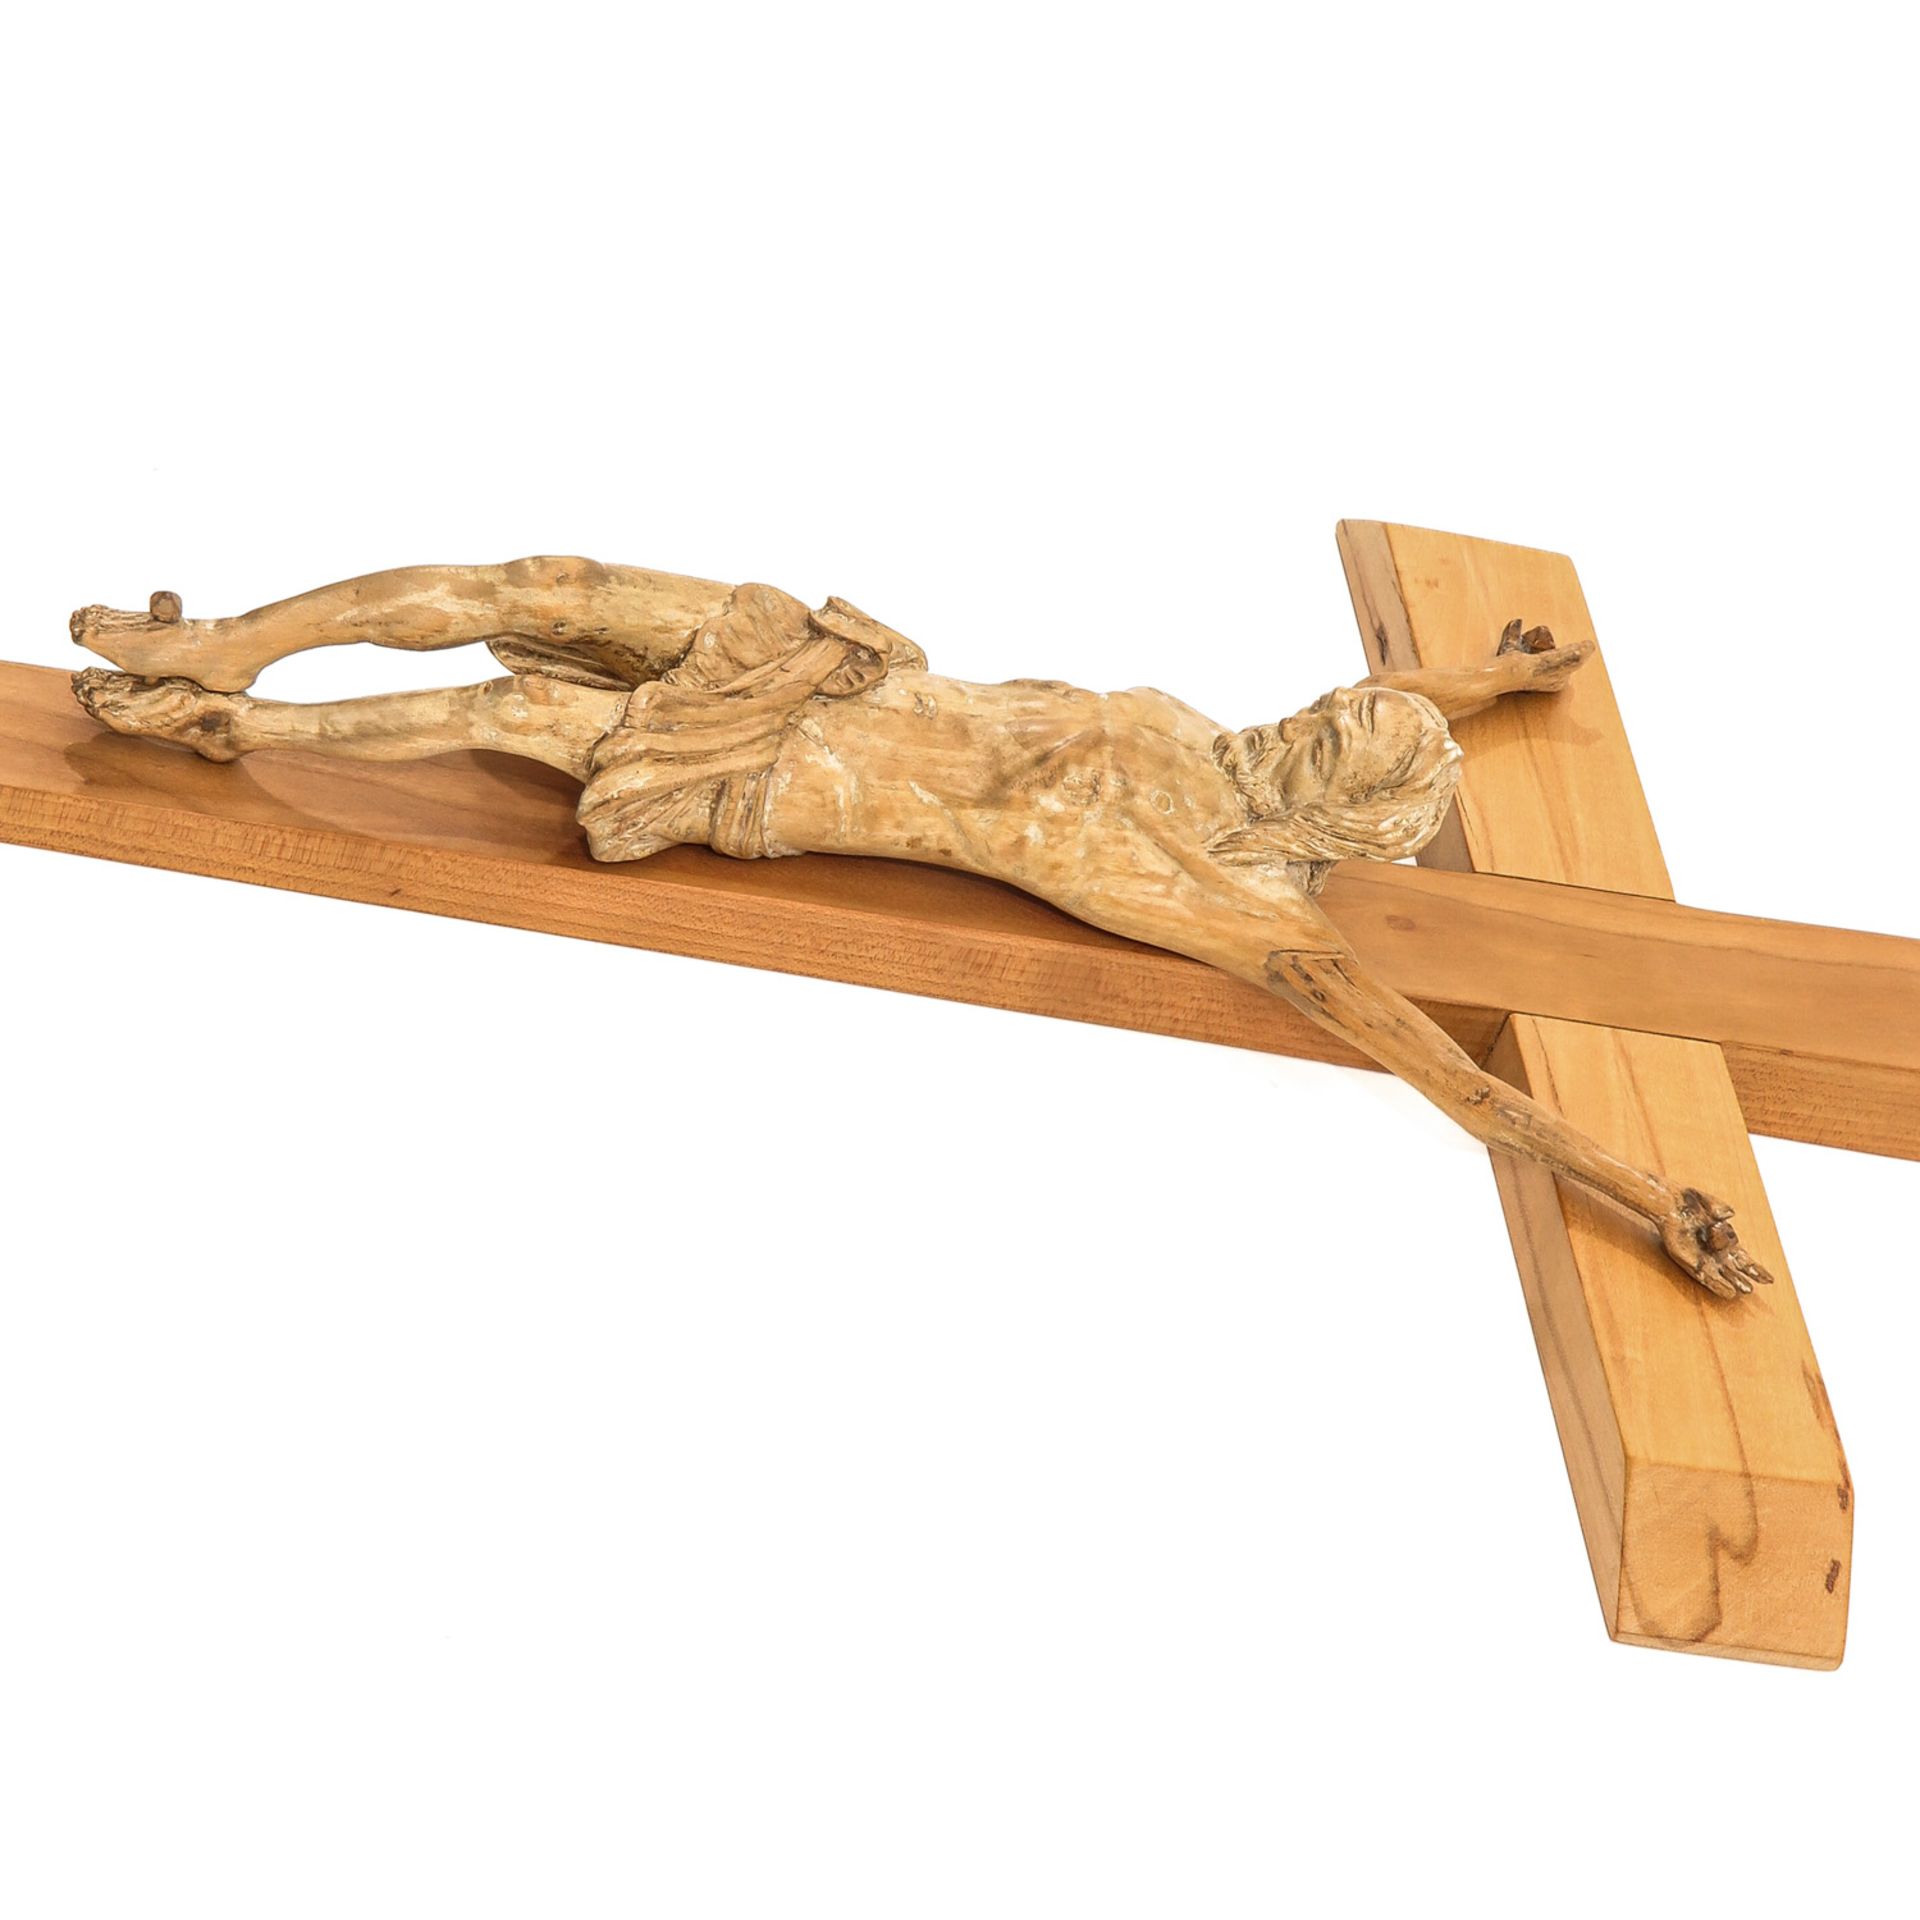 A Wood Crucifix - Image 4 of 6